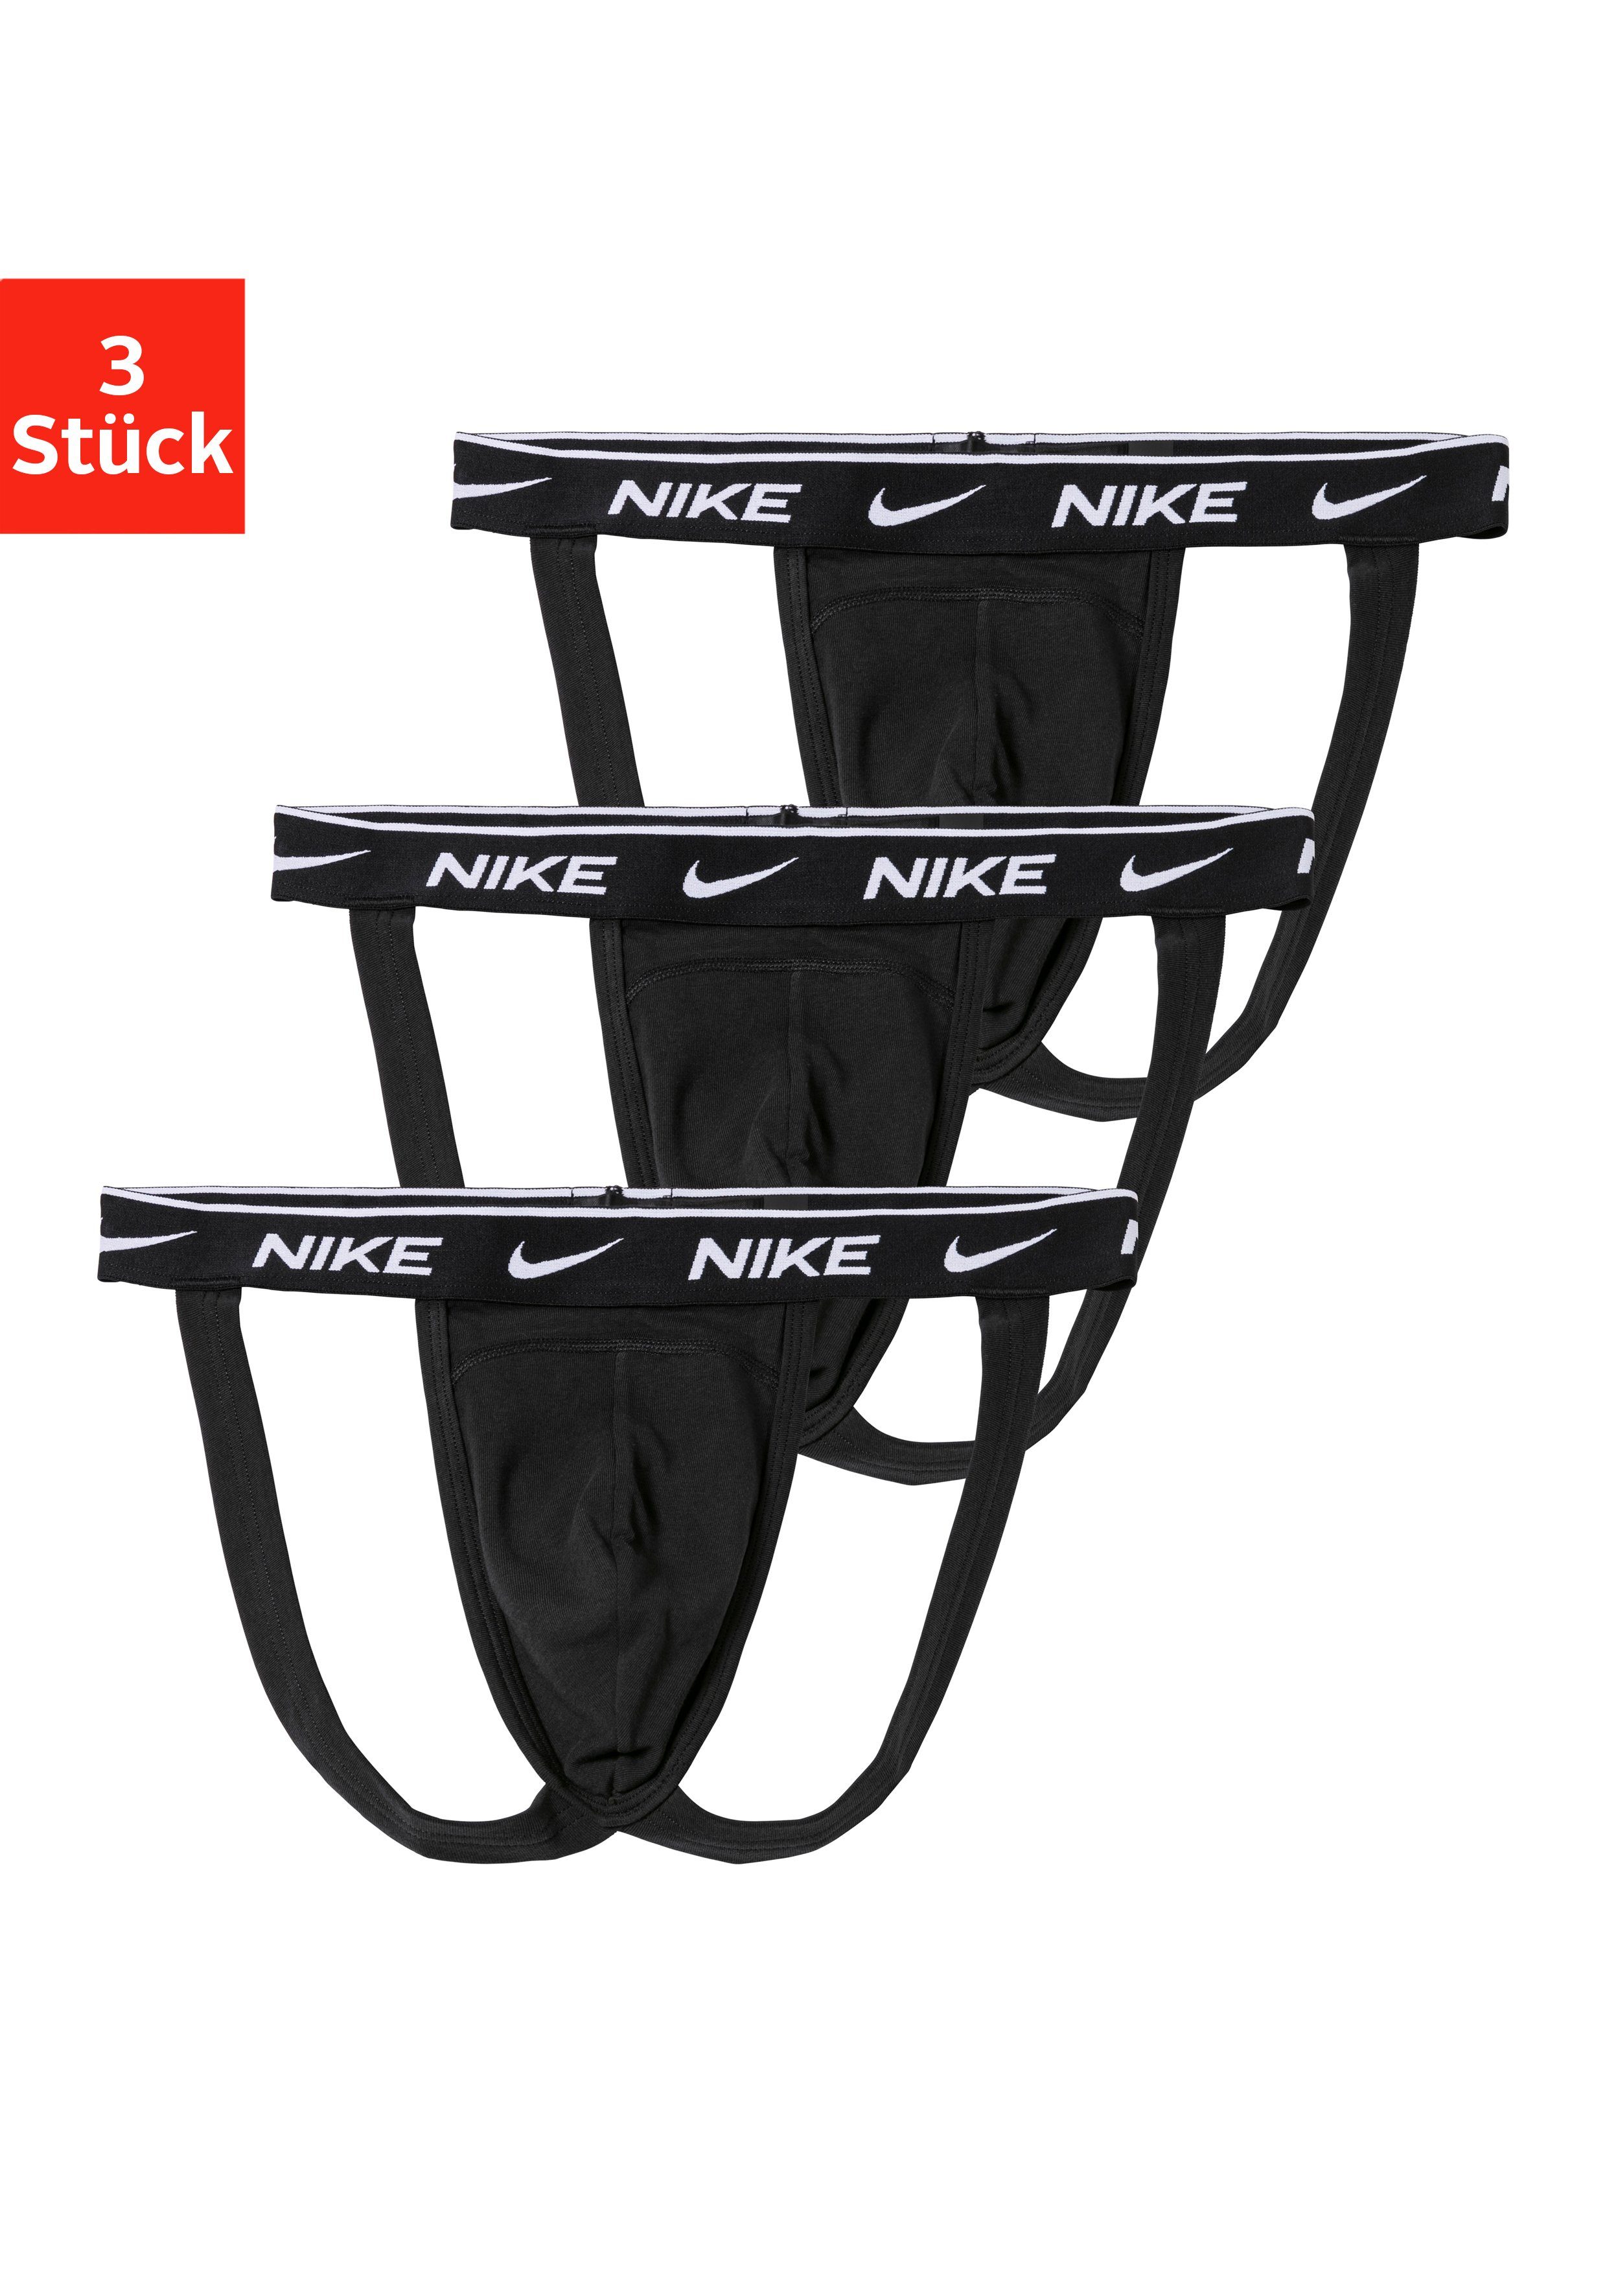 NIKE Underwear String (3 St) Jockstrap online kaufen | OTTO